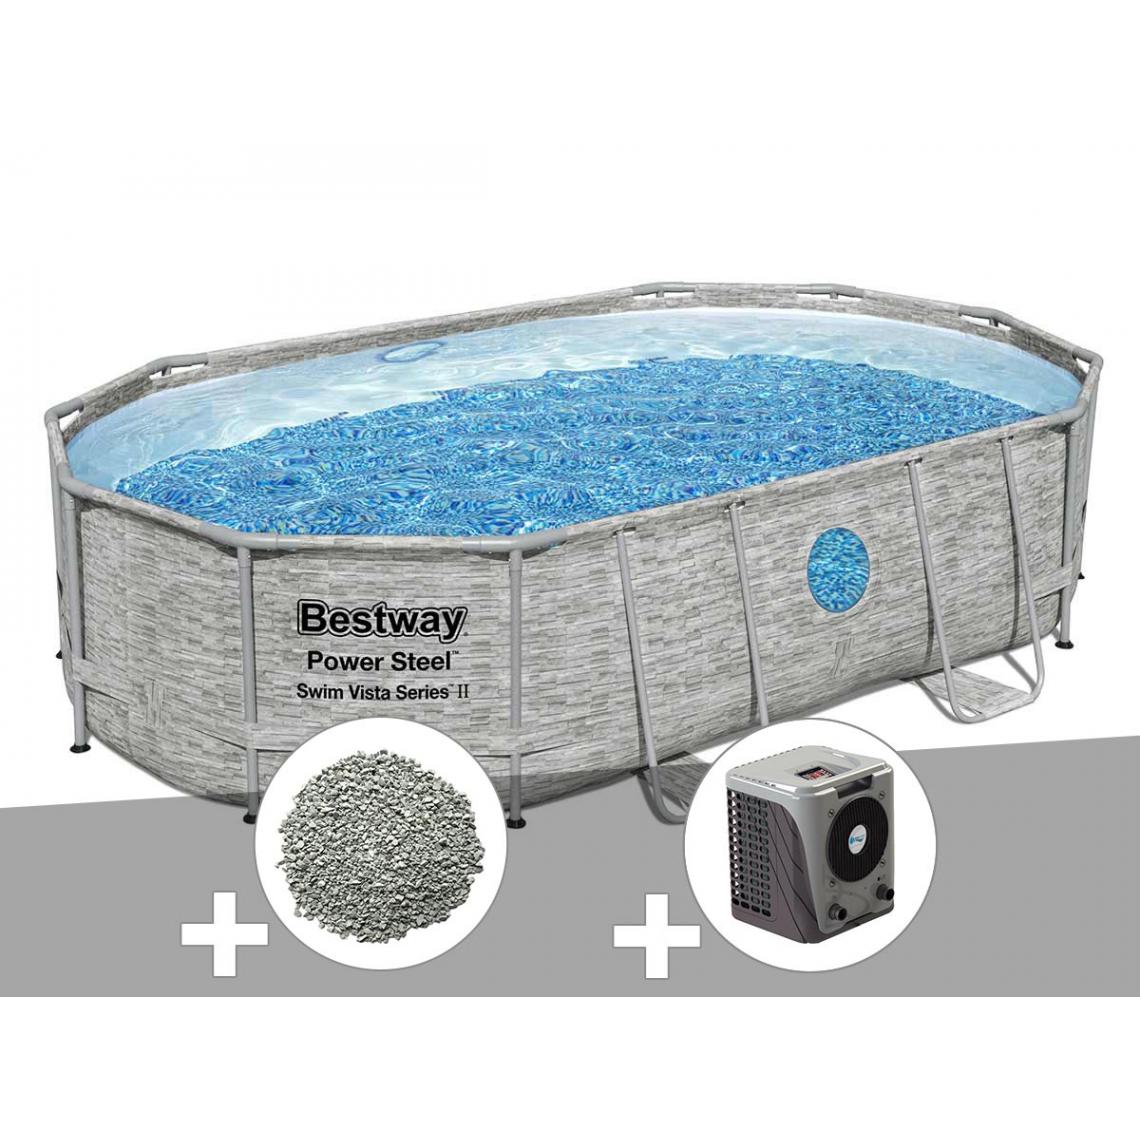 Bestway - Kit piscine tubulaire ovale Bestway Power Steel SwimVista avec hublots 4,88 x 3,05 x 1,07 m + 10 kg de zéolite + Pompe à chaleur - Piscine Tubulaire